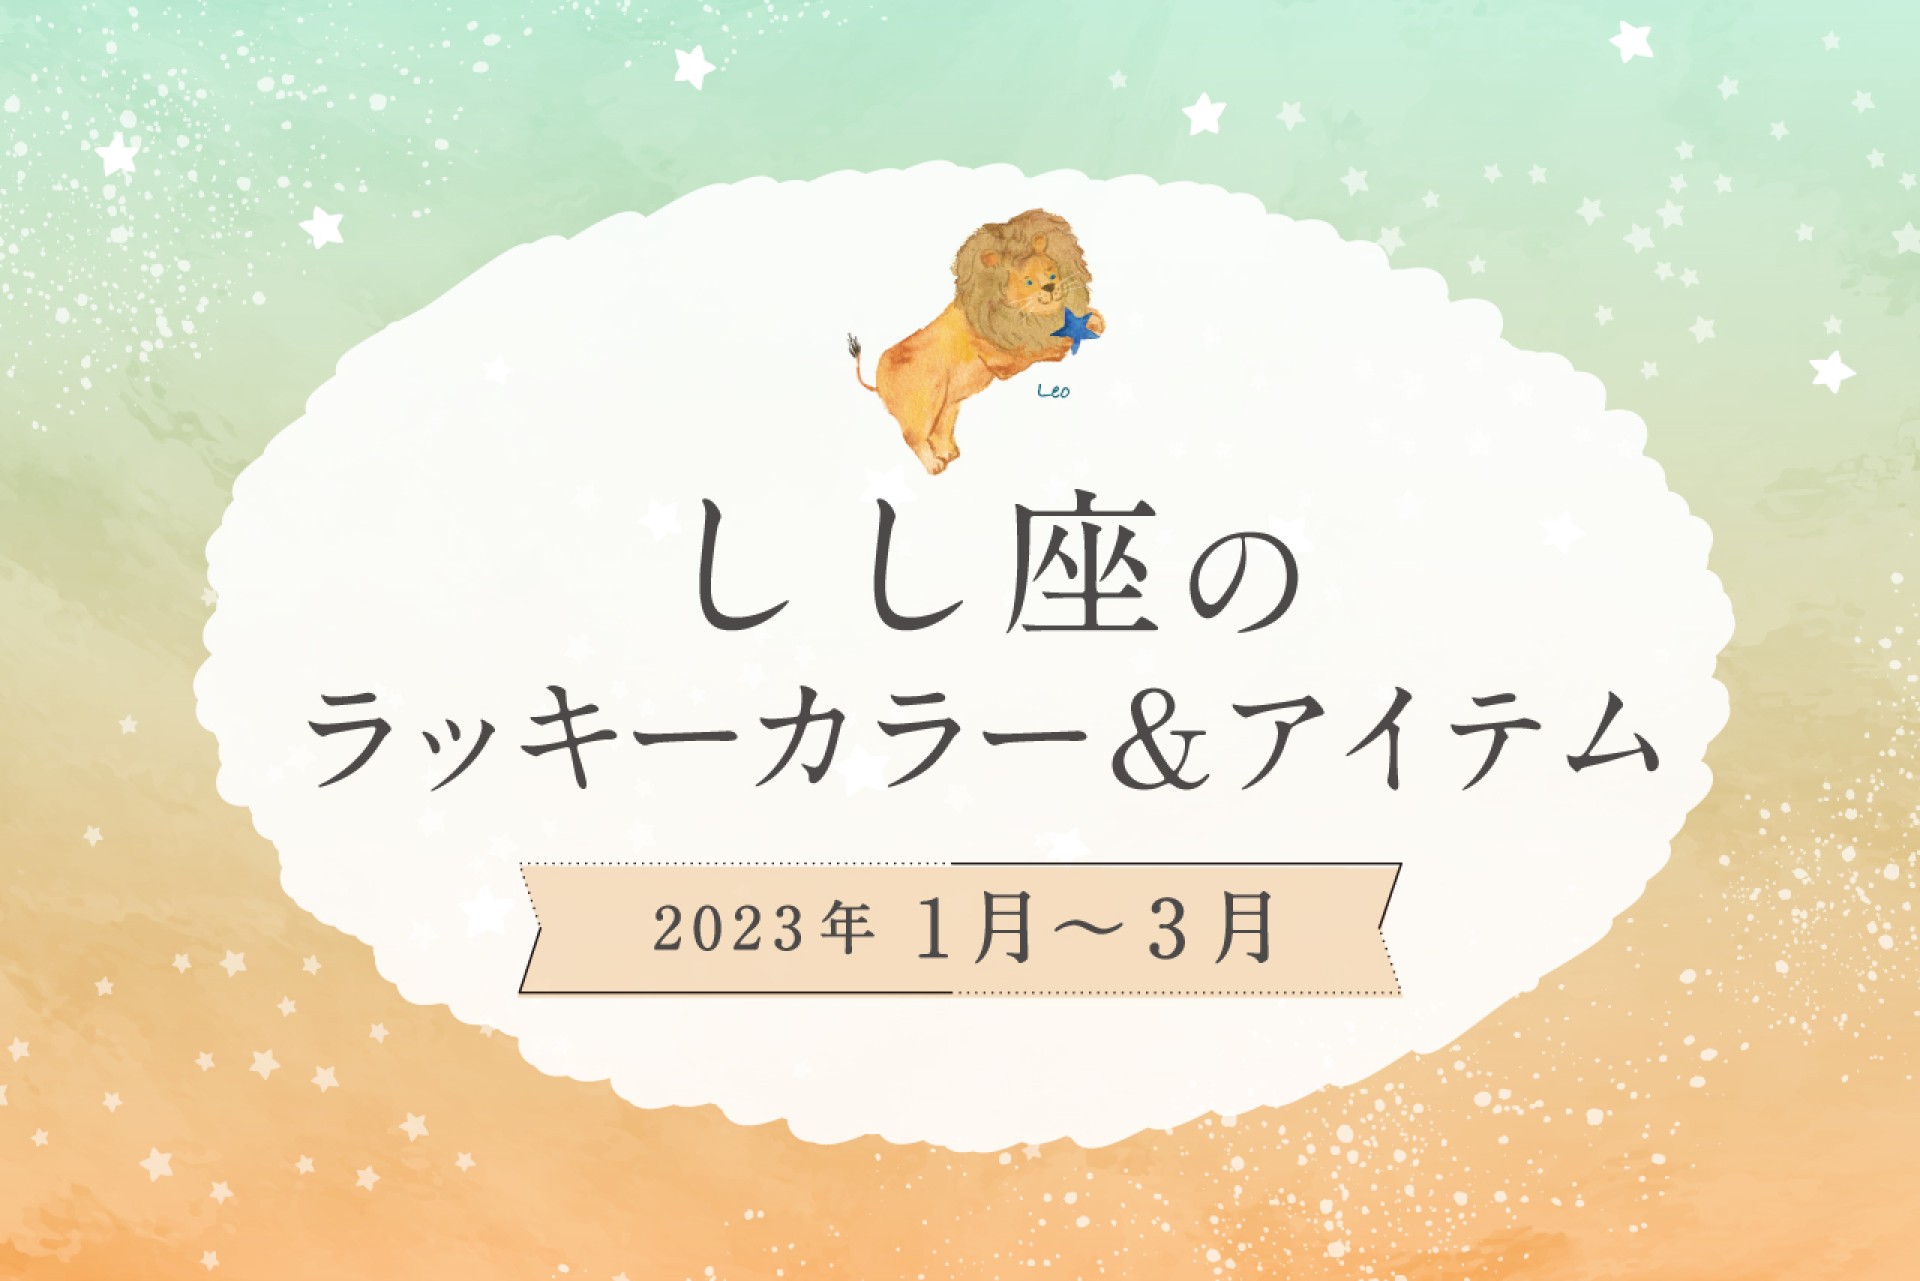 しし座のラッキーカラーとラッキーアイテム【2022年1月・2月・3月】